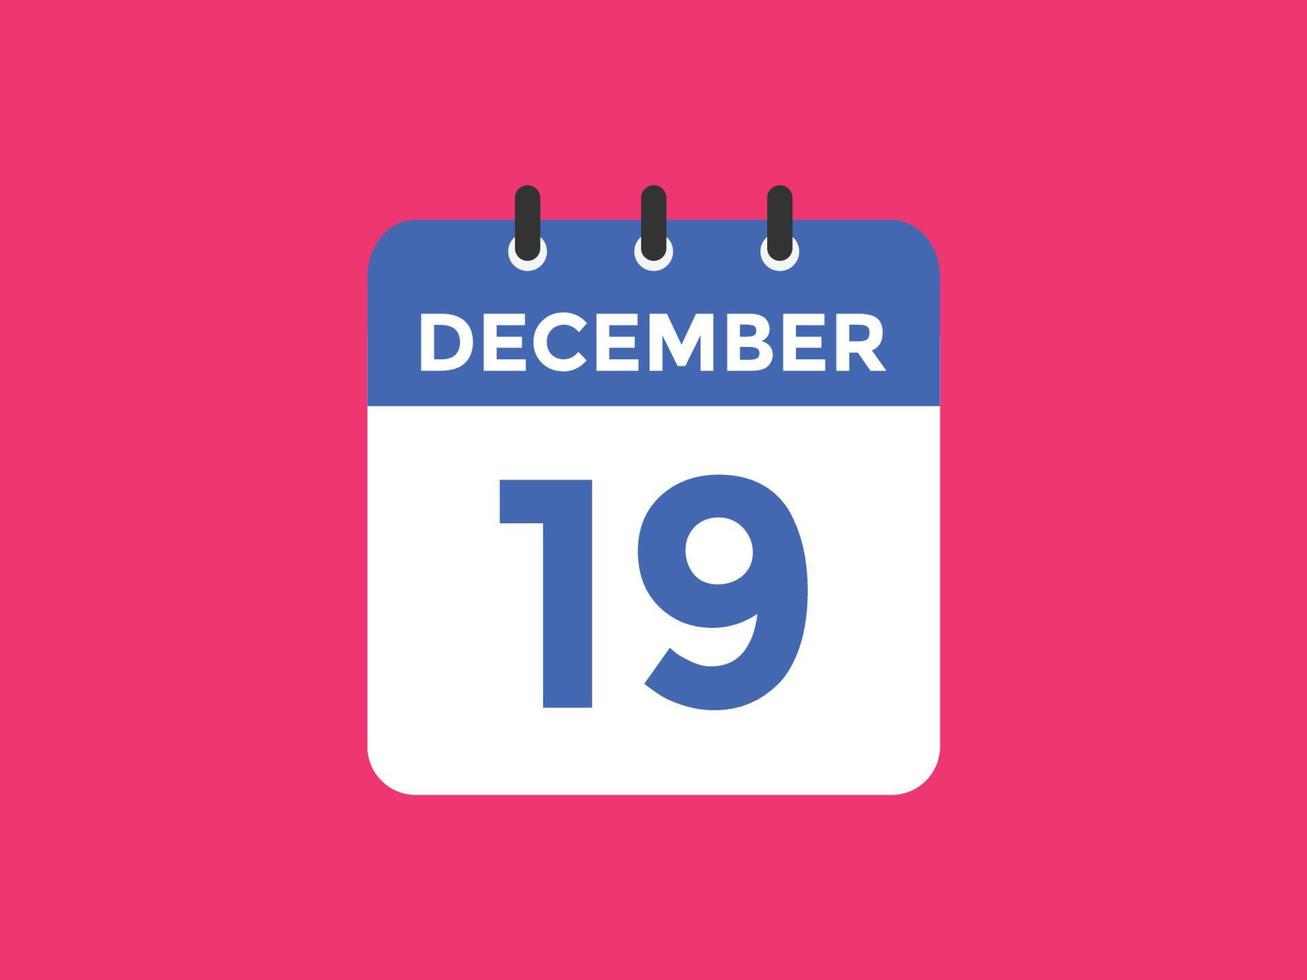 Recordatorio del calendario del 19 de diciembre. Plantilla de icono de calendario diario del 19 de diciembre. plantilla de diseño de icono de calendario 19 de diciembre. ilustración vectorial vector